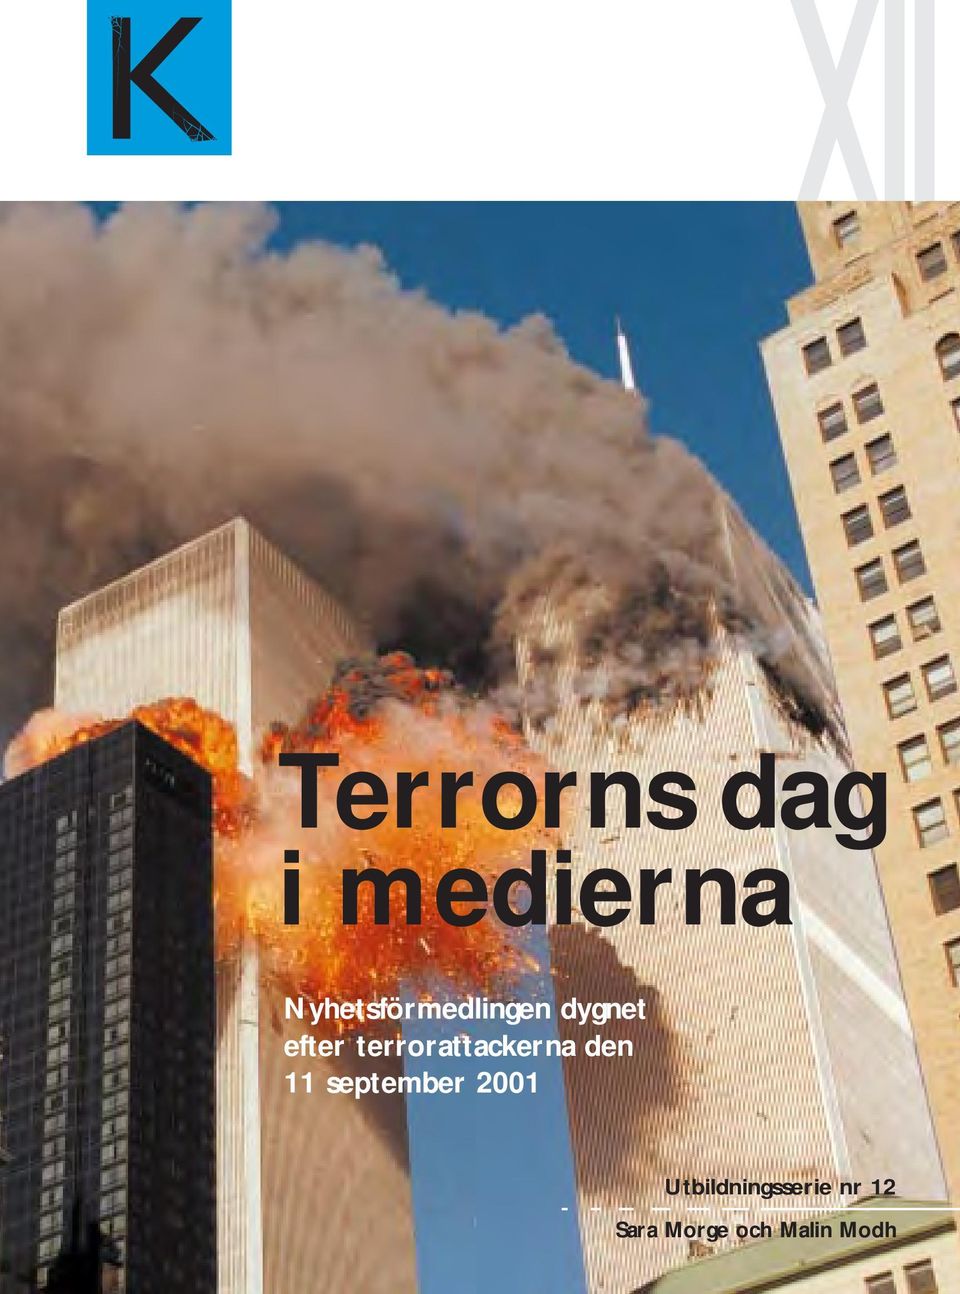 terrorattackerna den 11 september